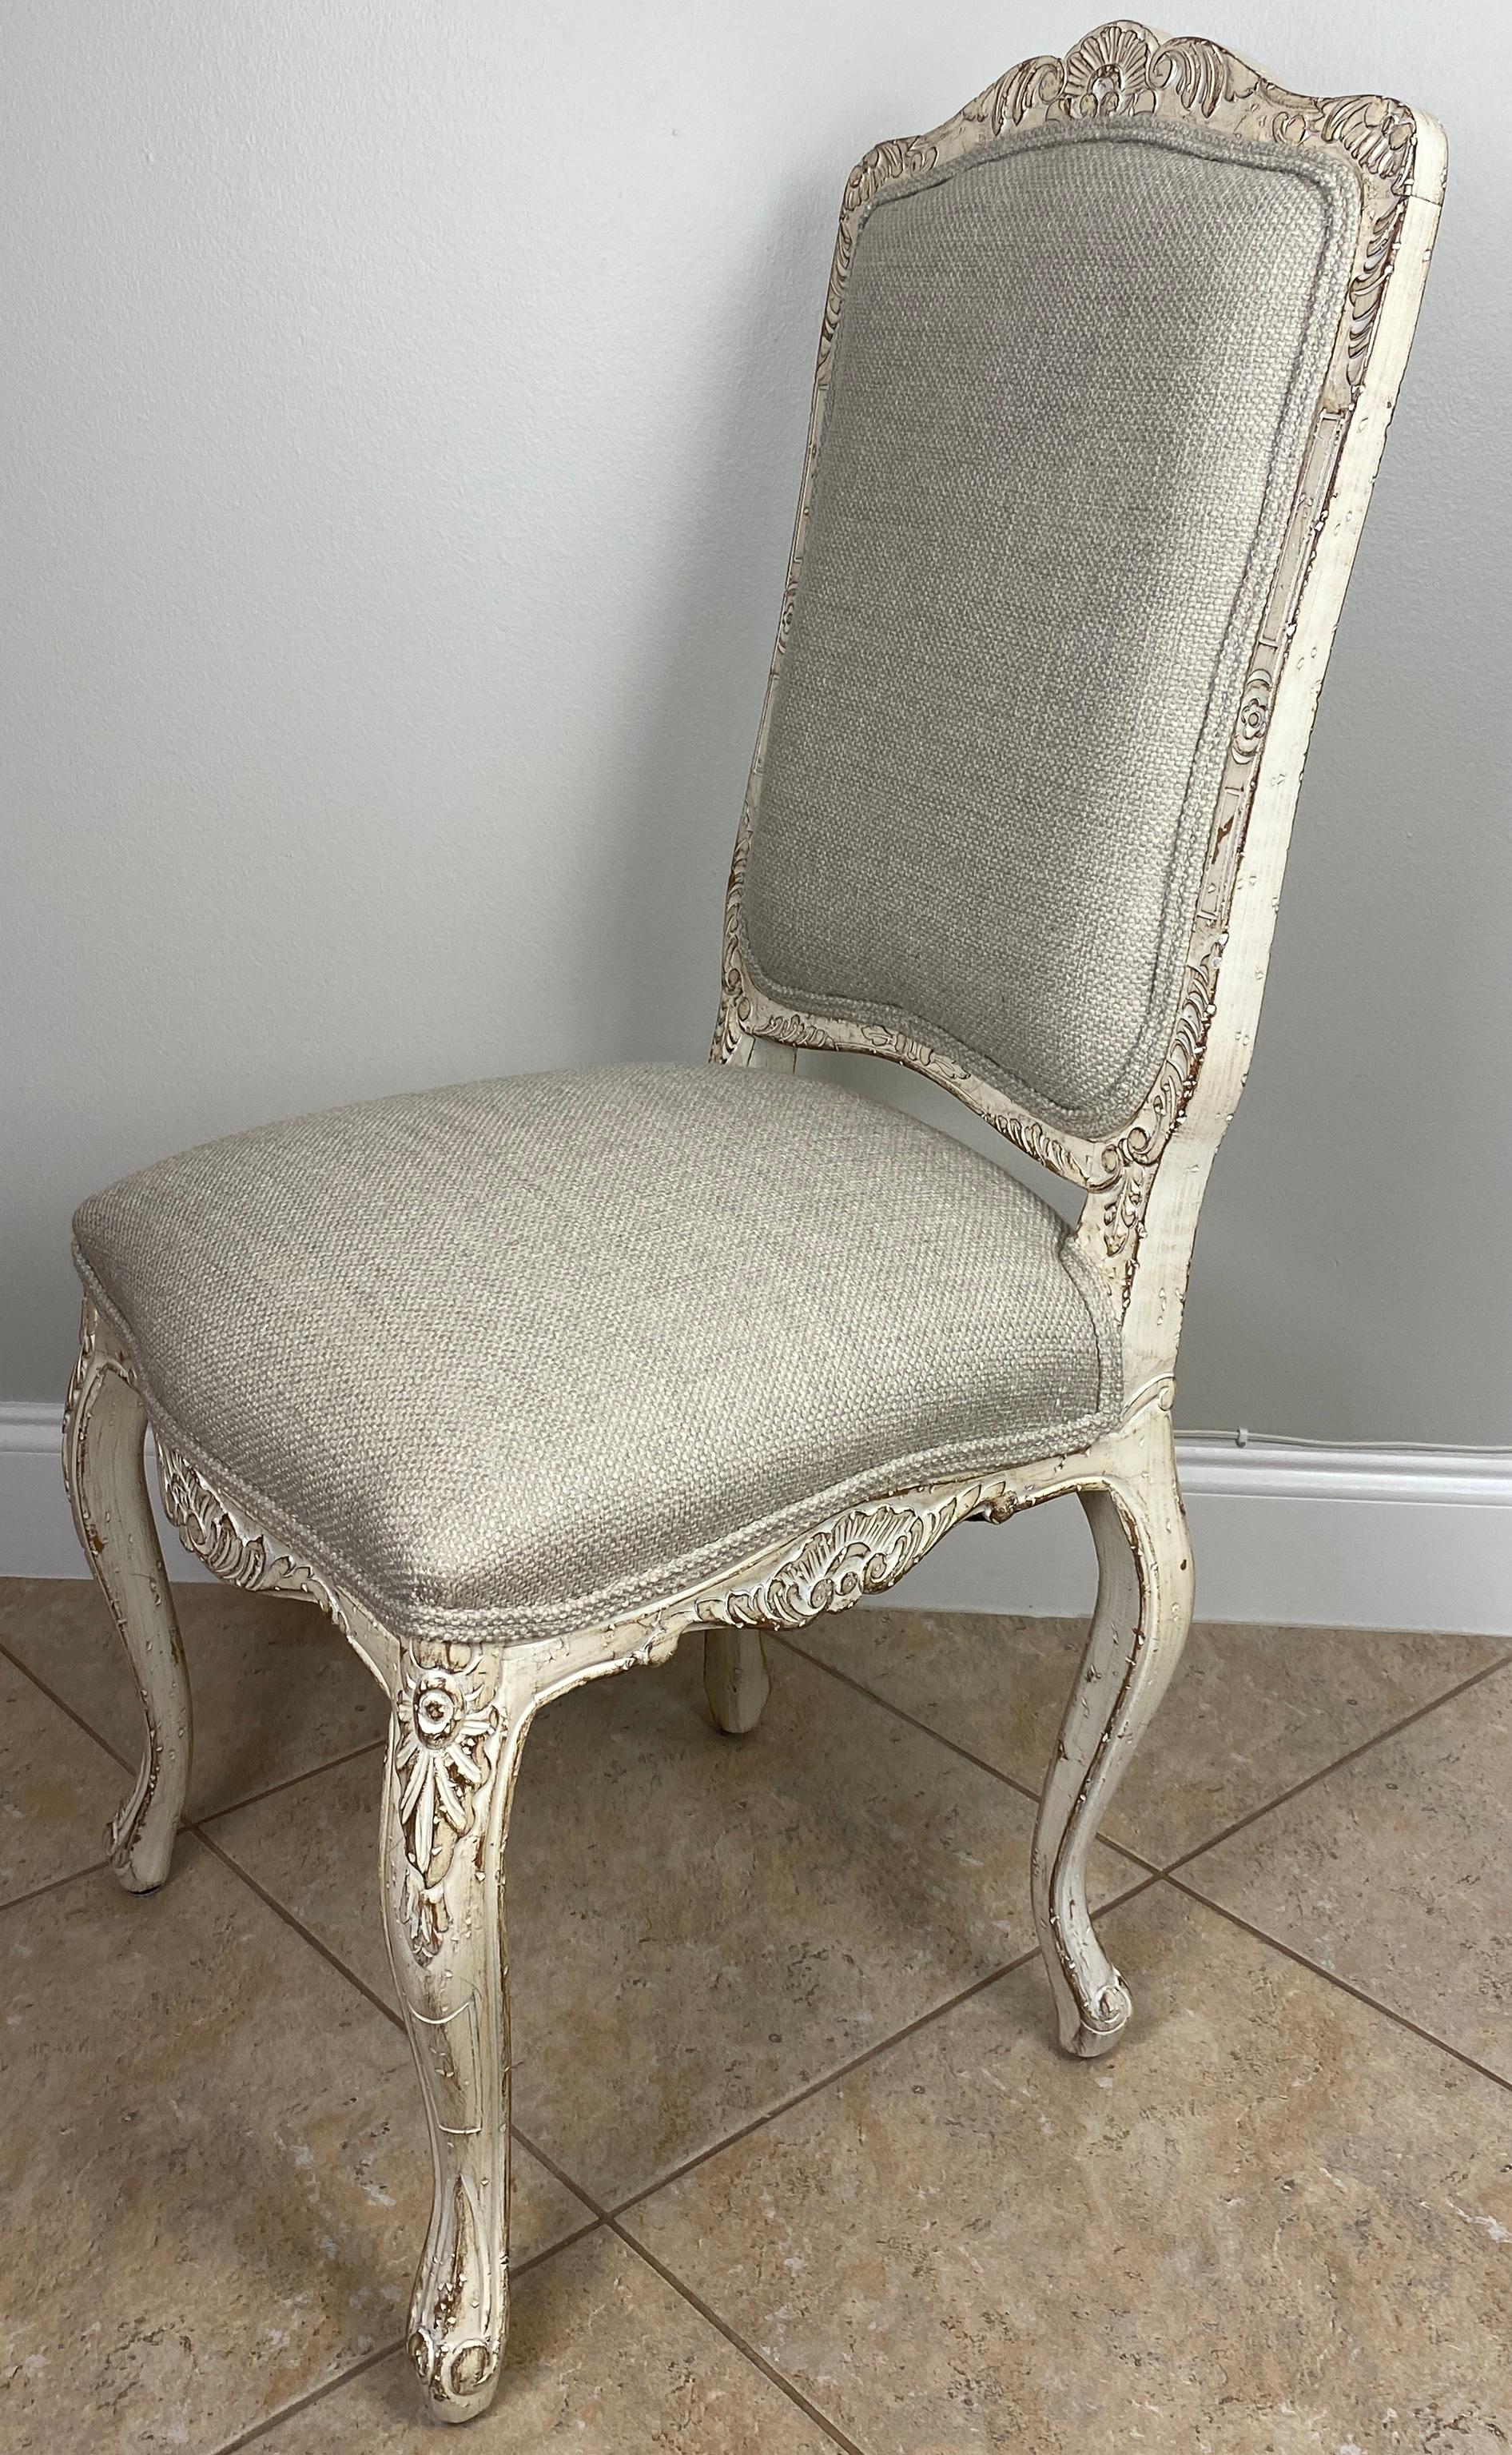 Un ensemble de quatre chaises de salle à manger de style Louis XV, confortables et robustes, de très bonne qualité, dans une agréable finition beige vieillie. Nouvellement retapissé avec un tissu neutre. 

Les cadres en bois de style Louis XV sont